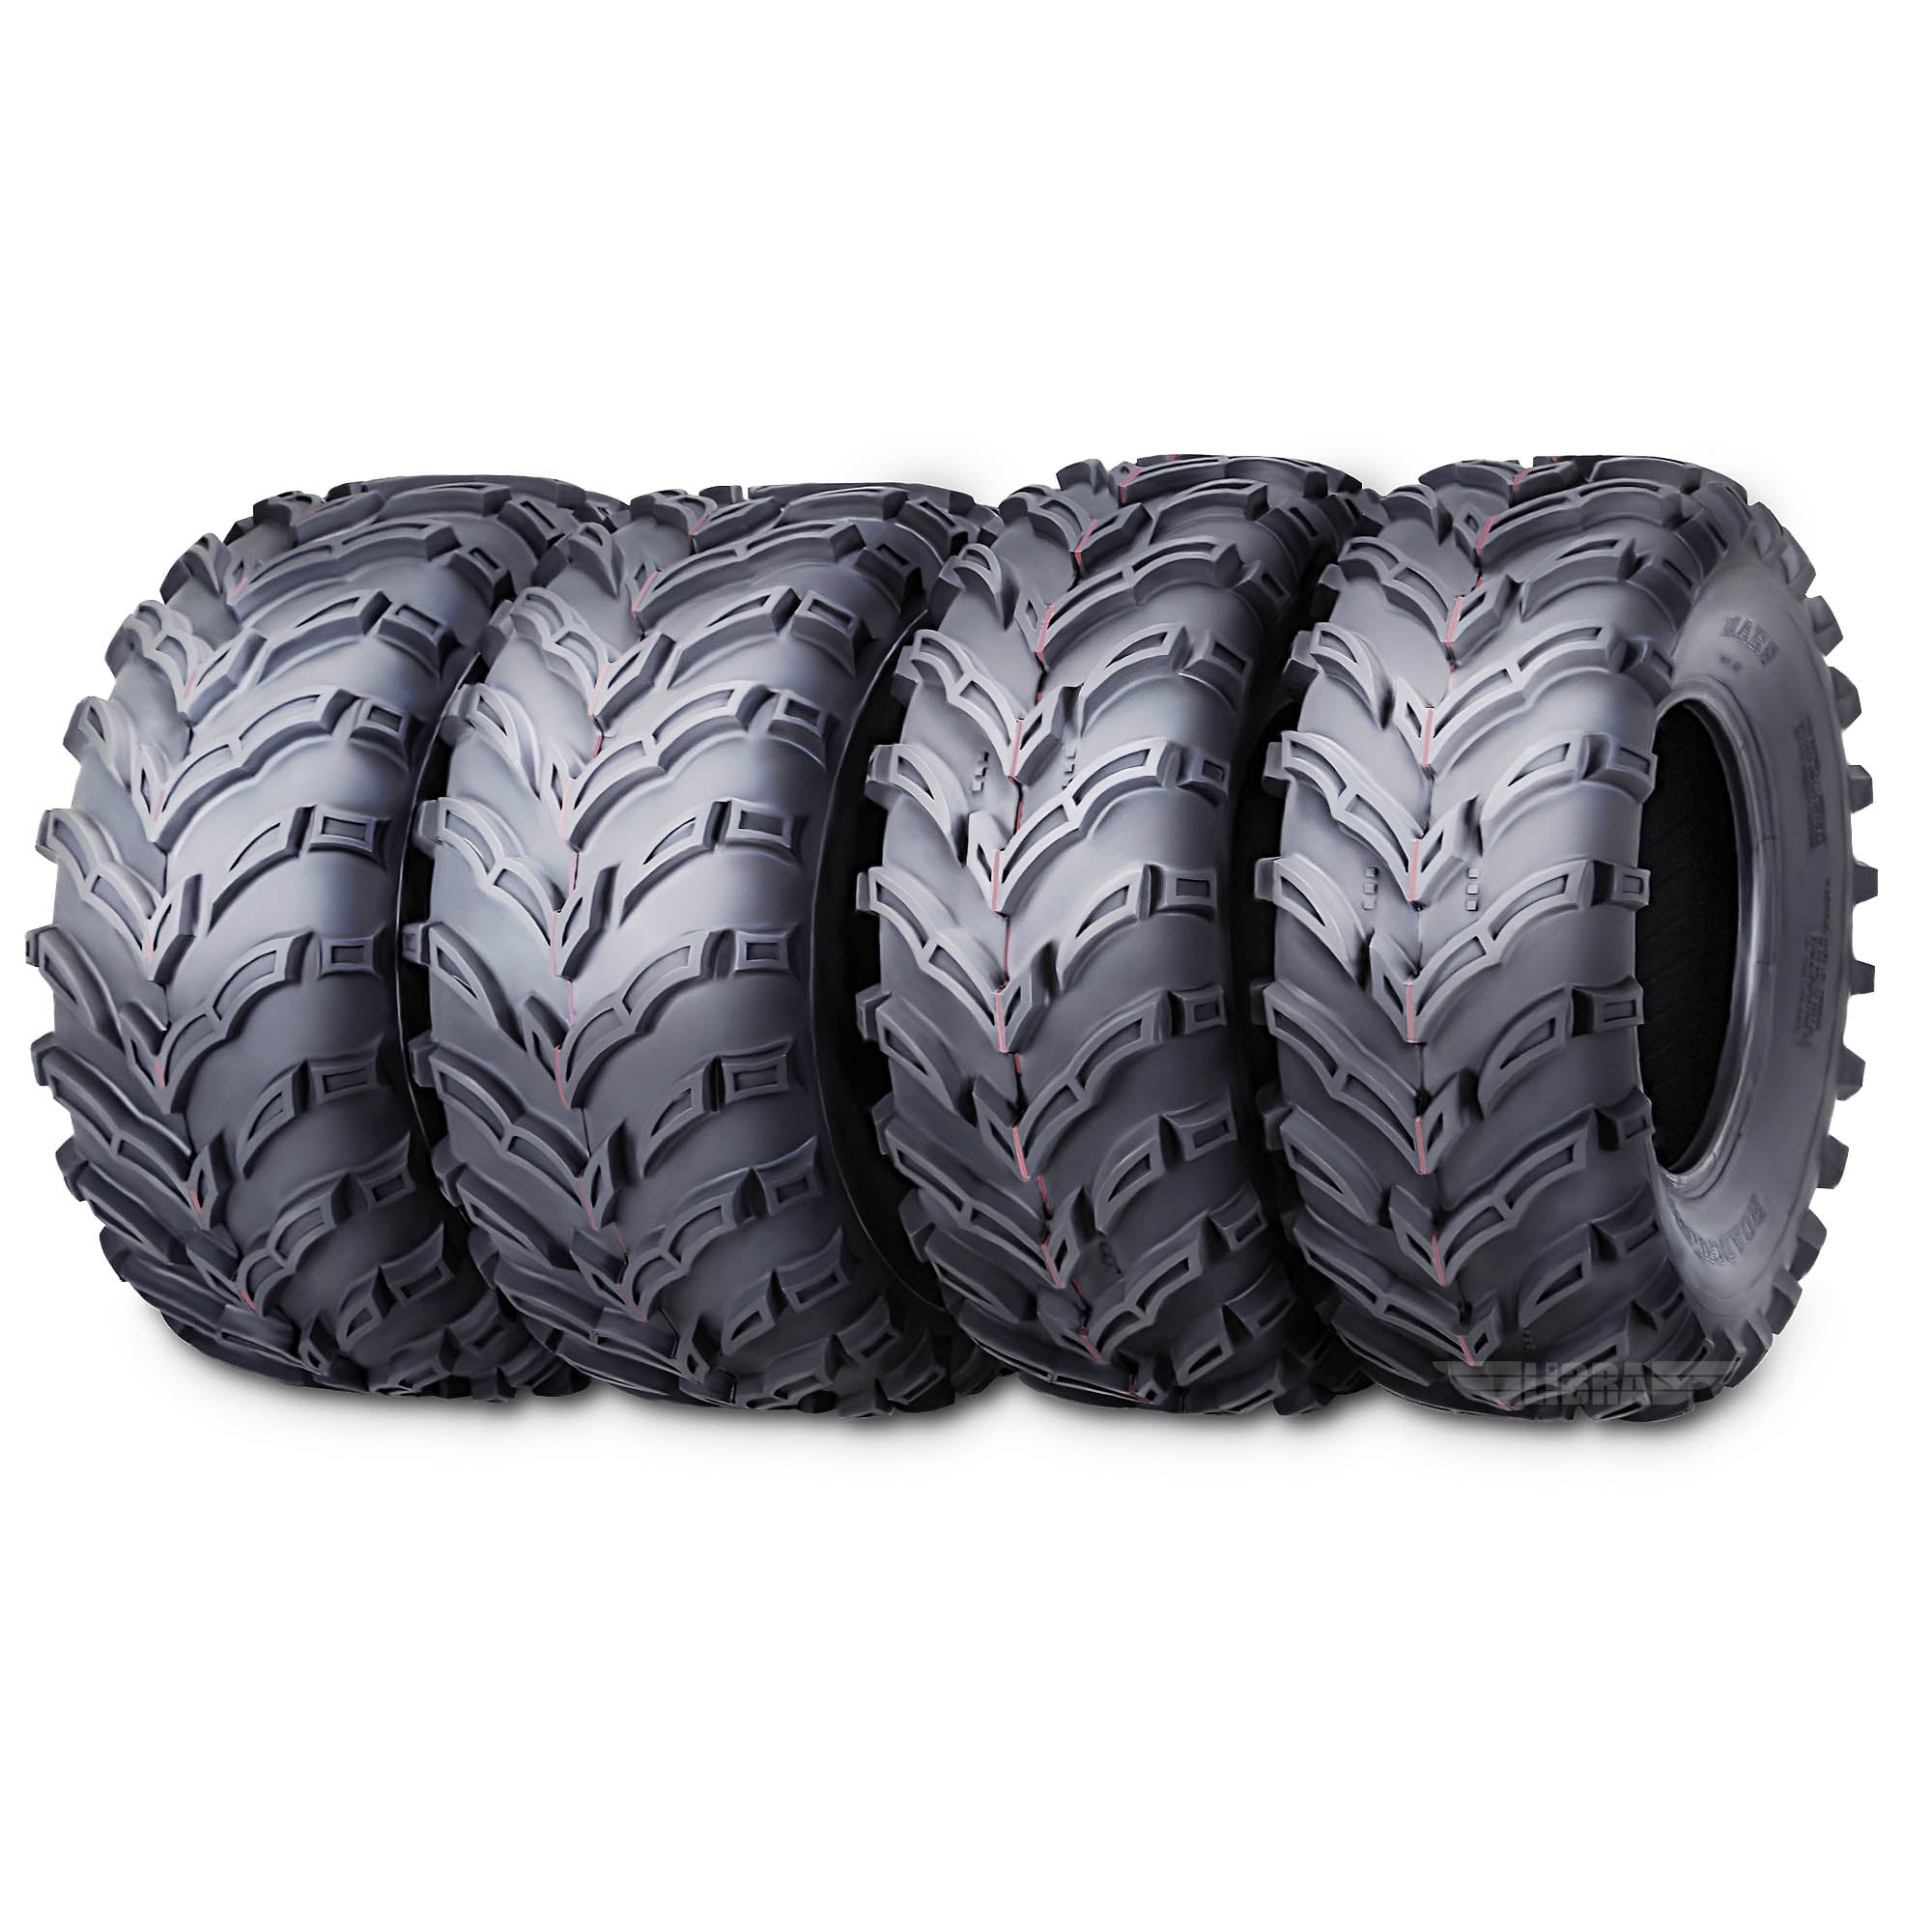 SUPERGUIDER 26x9-12 26x11-12 ATV Tires Complete Set of 4 ATV UTV Tires 26x9x12 26x11x12 6PR 